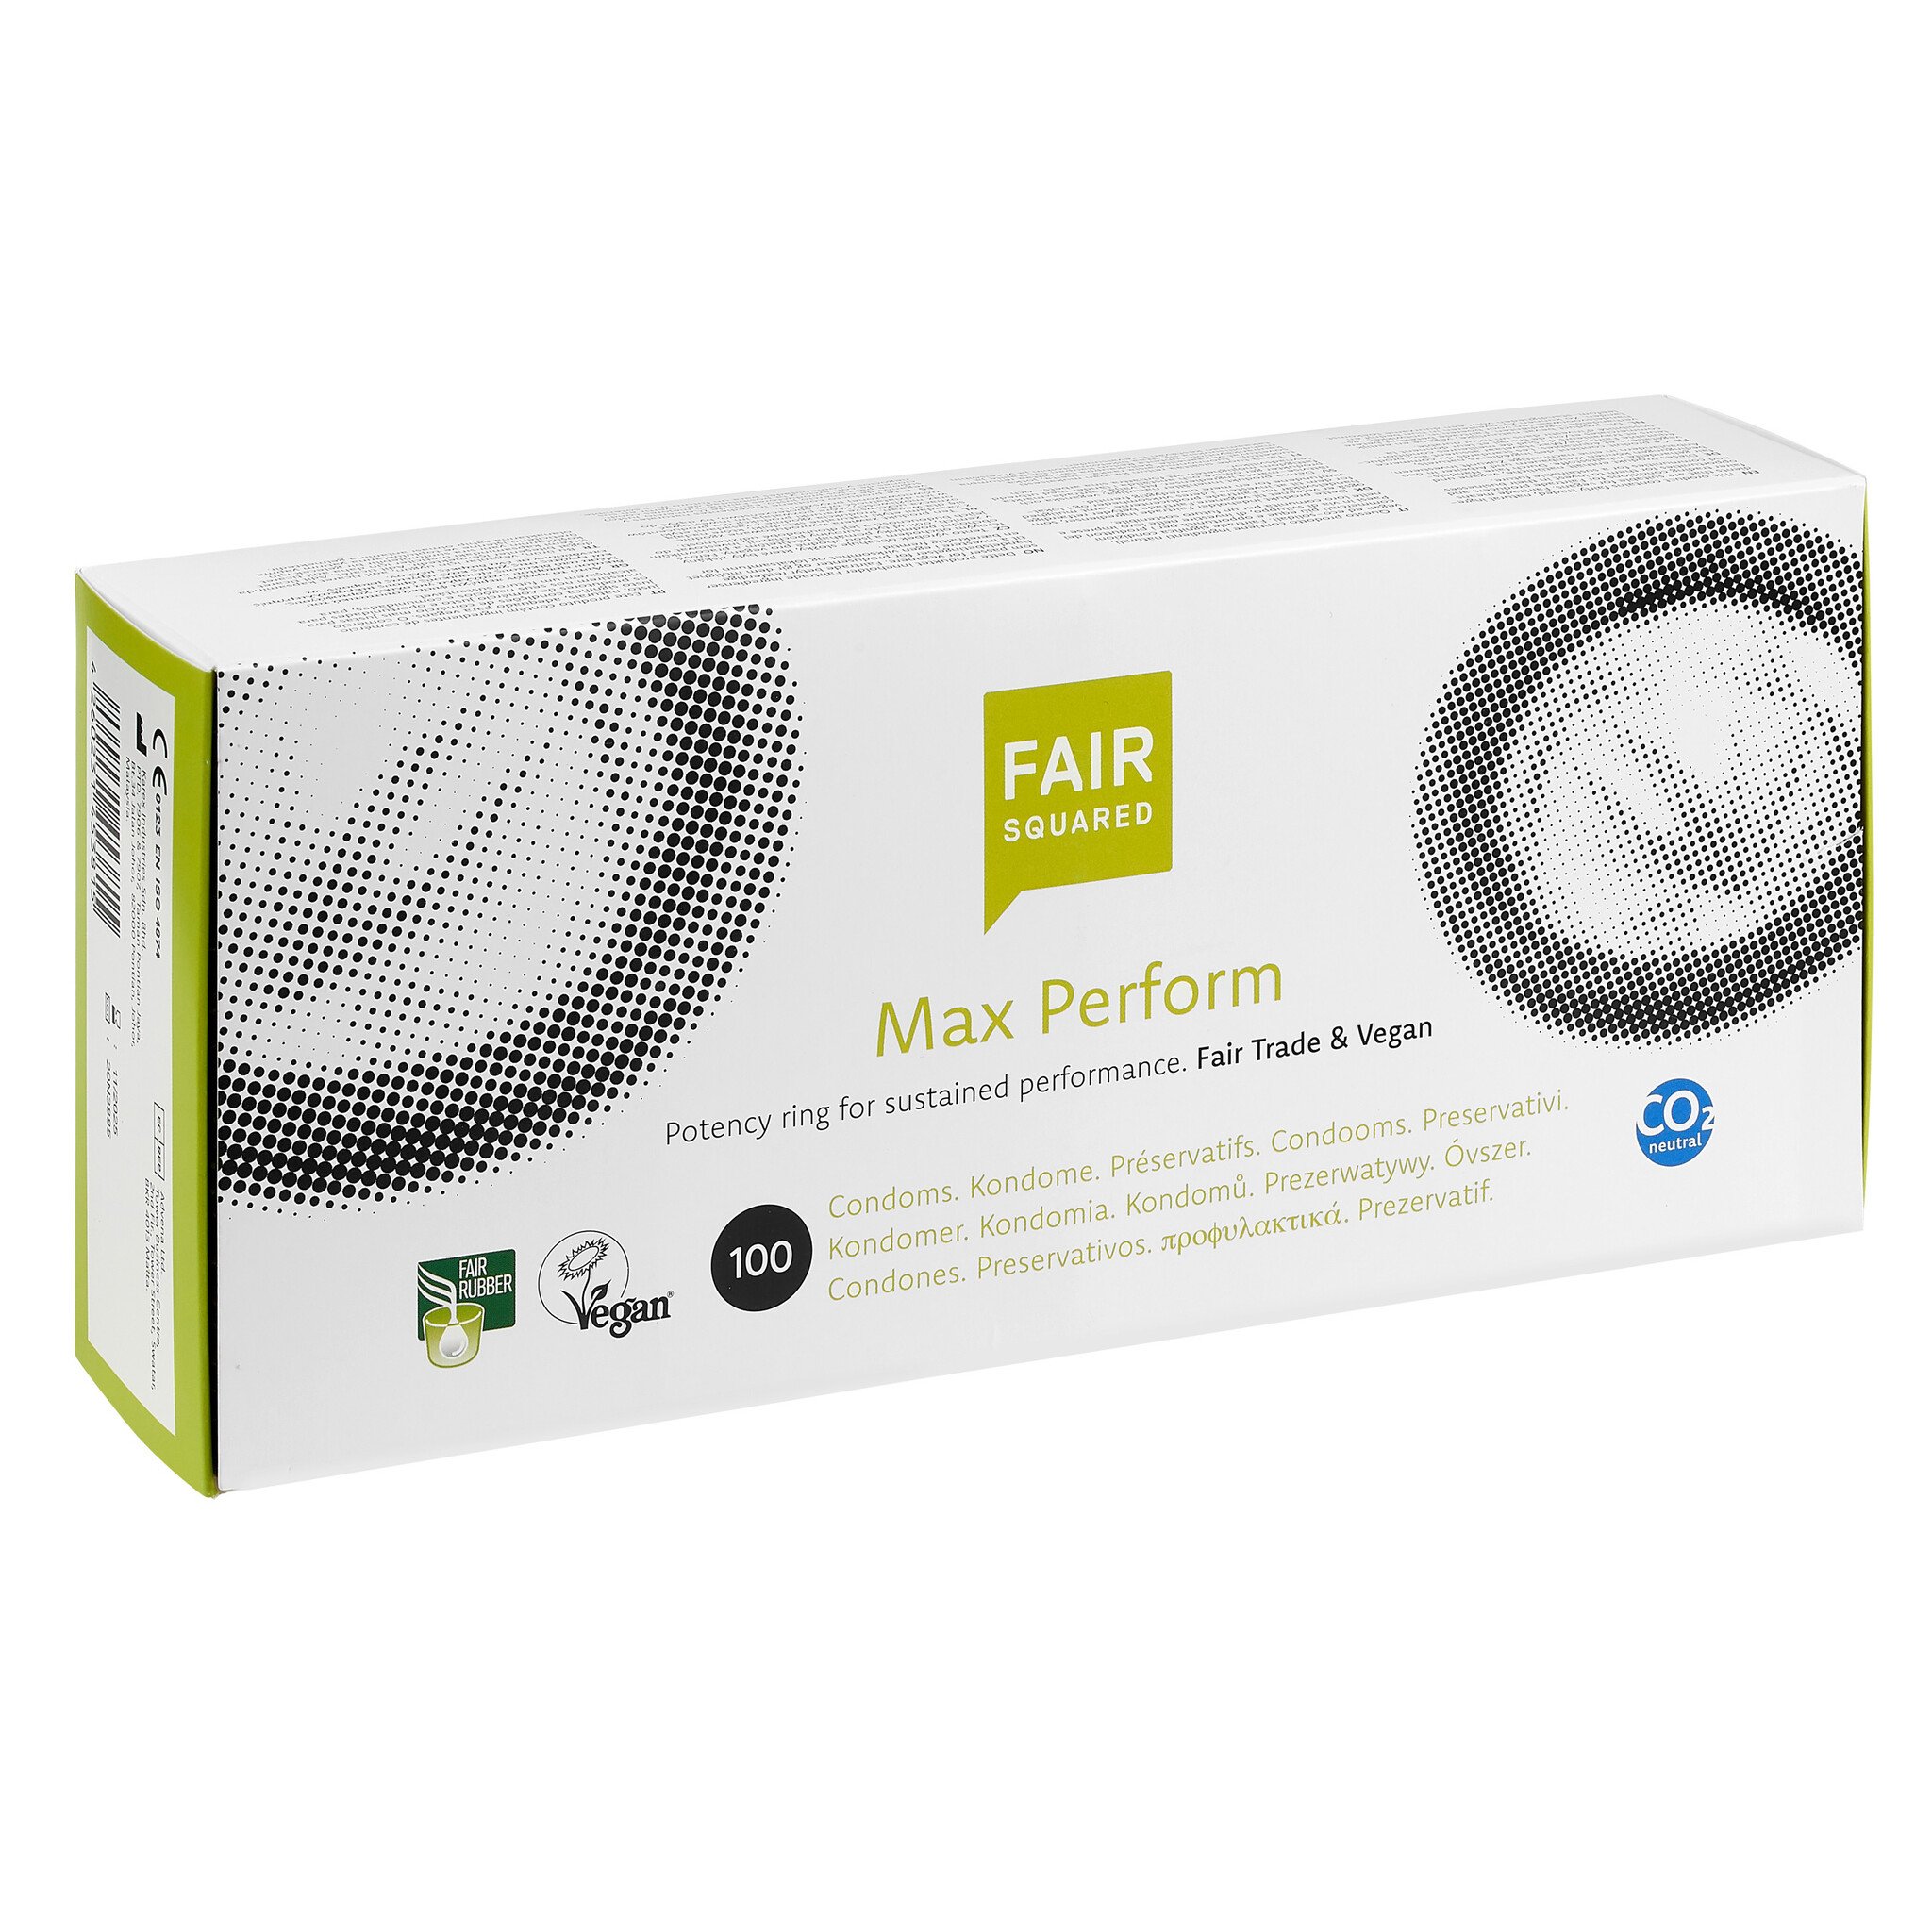 Fair Squared MaxPerform Eco Fair Trade Condooms 100 stuks